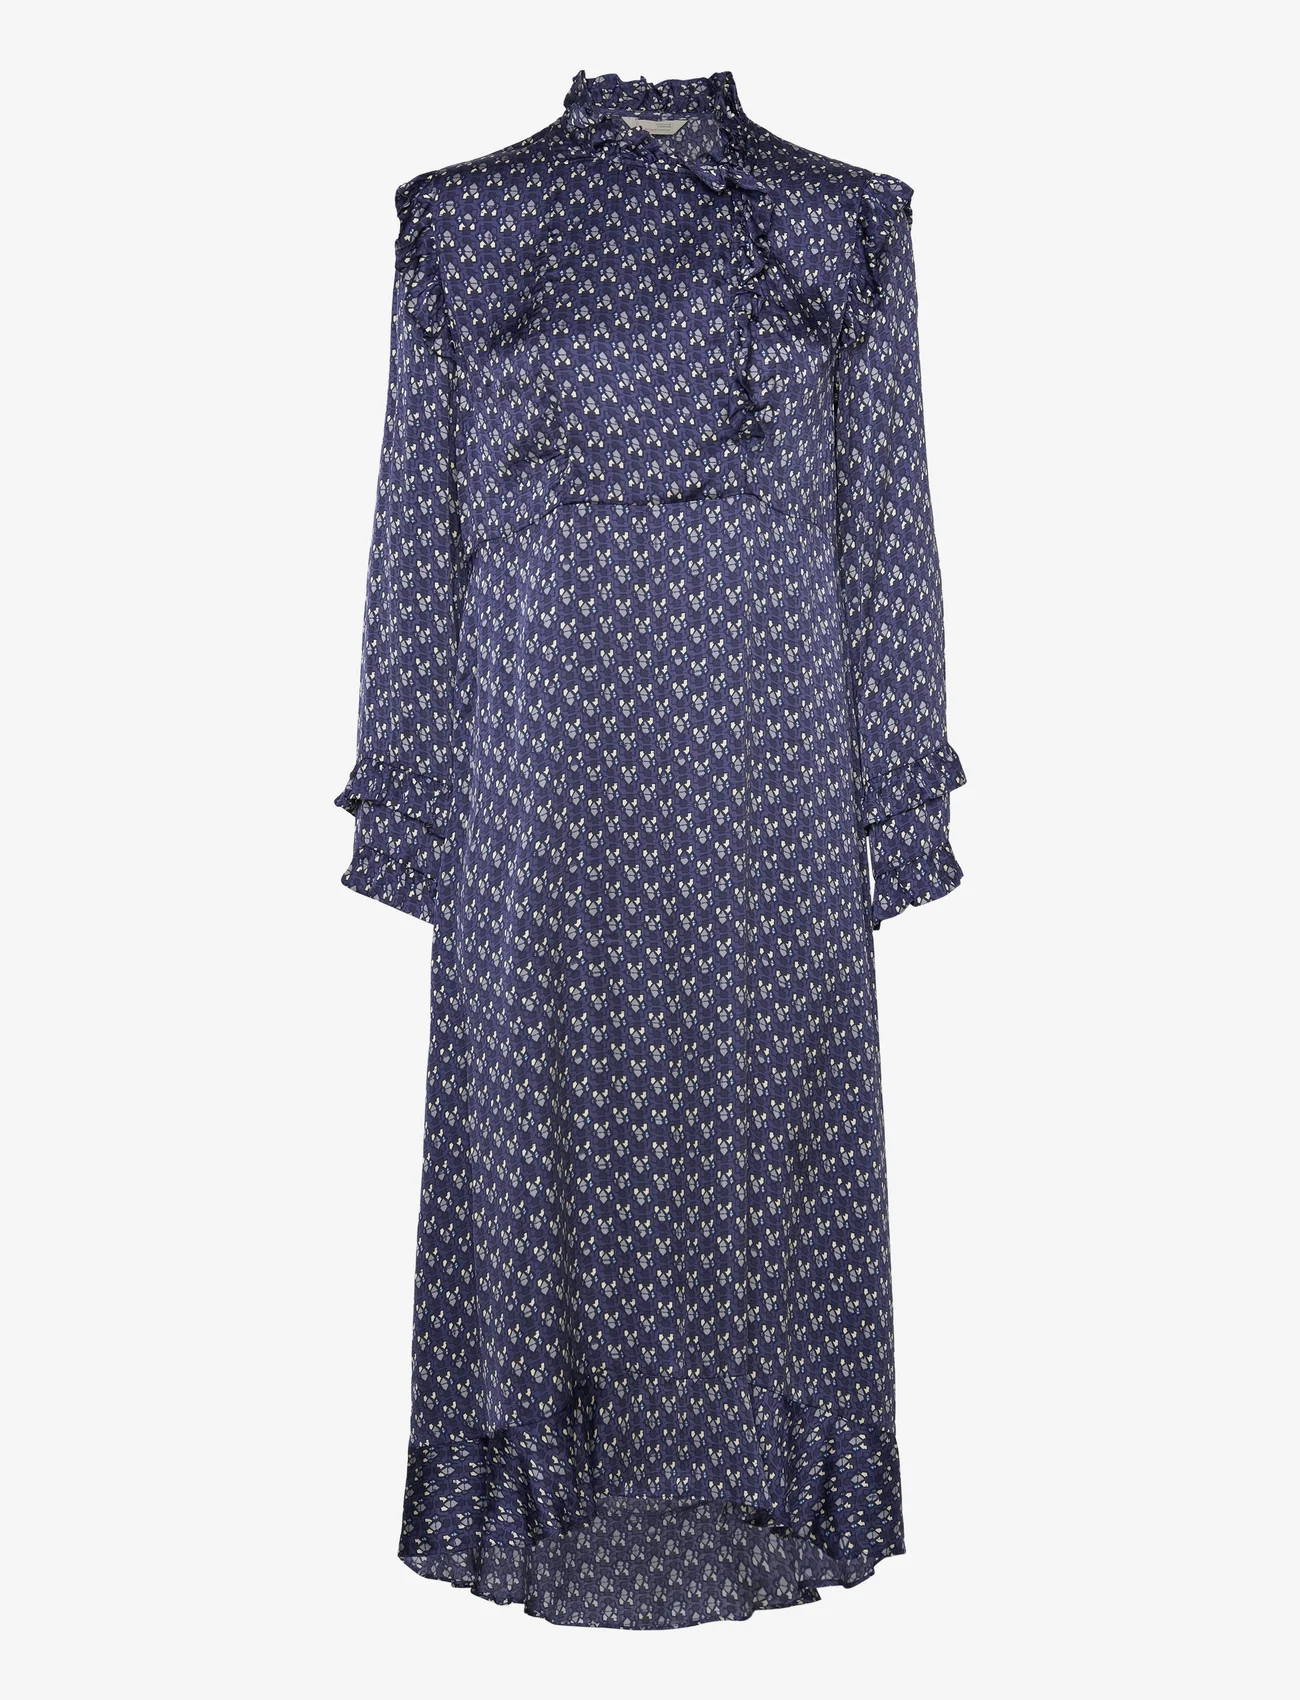 ODD MOLLY - Rachael Dress - odzież imprezowa w cenach outletowych - stormy blue - 0